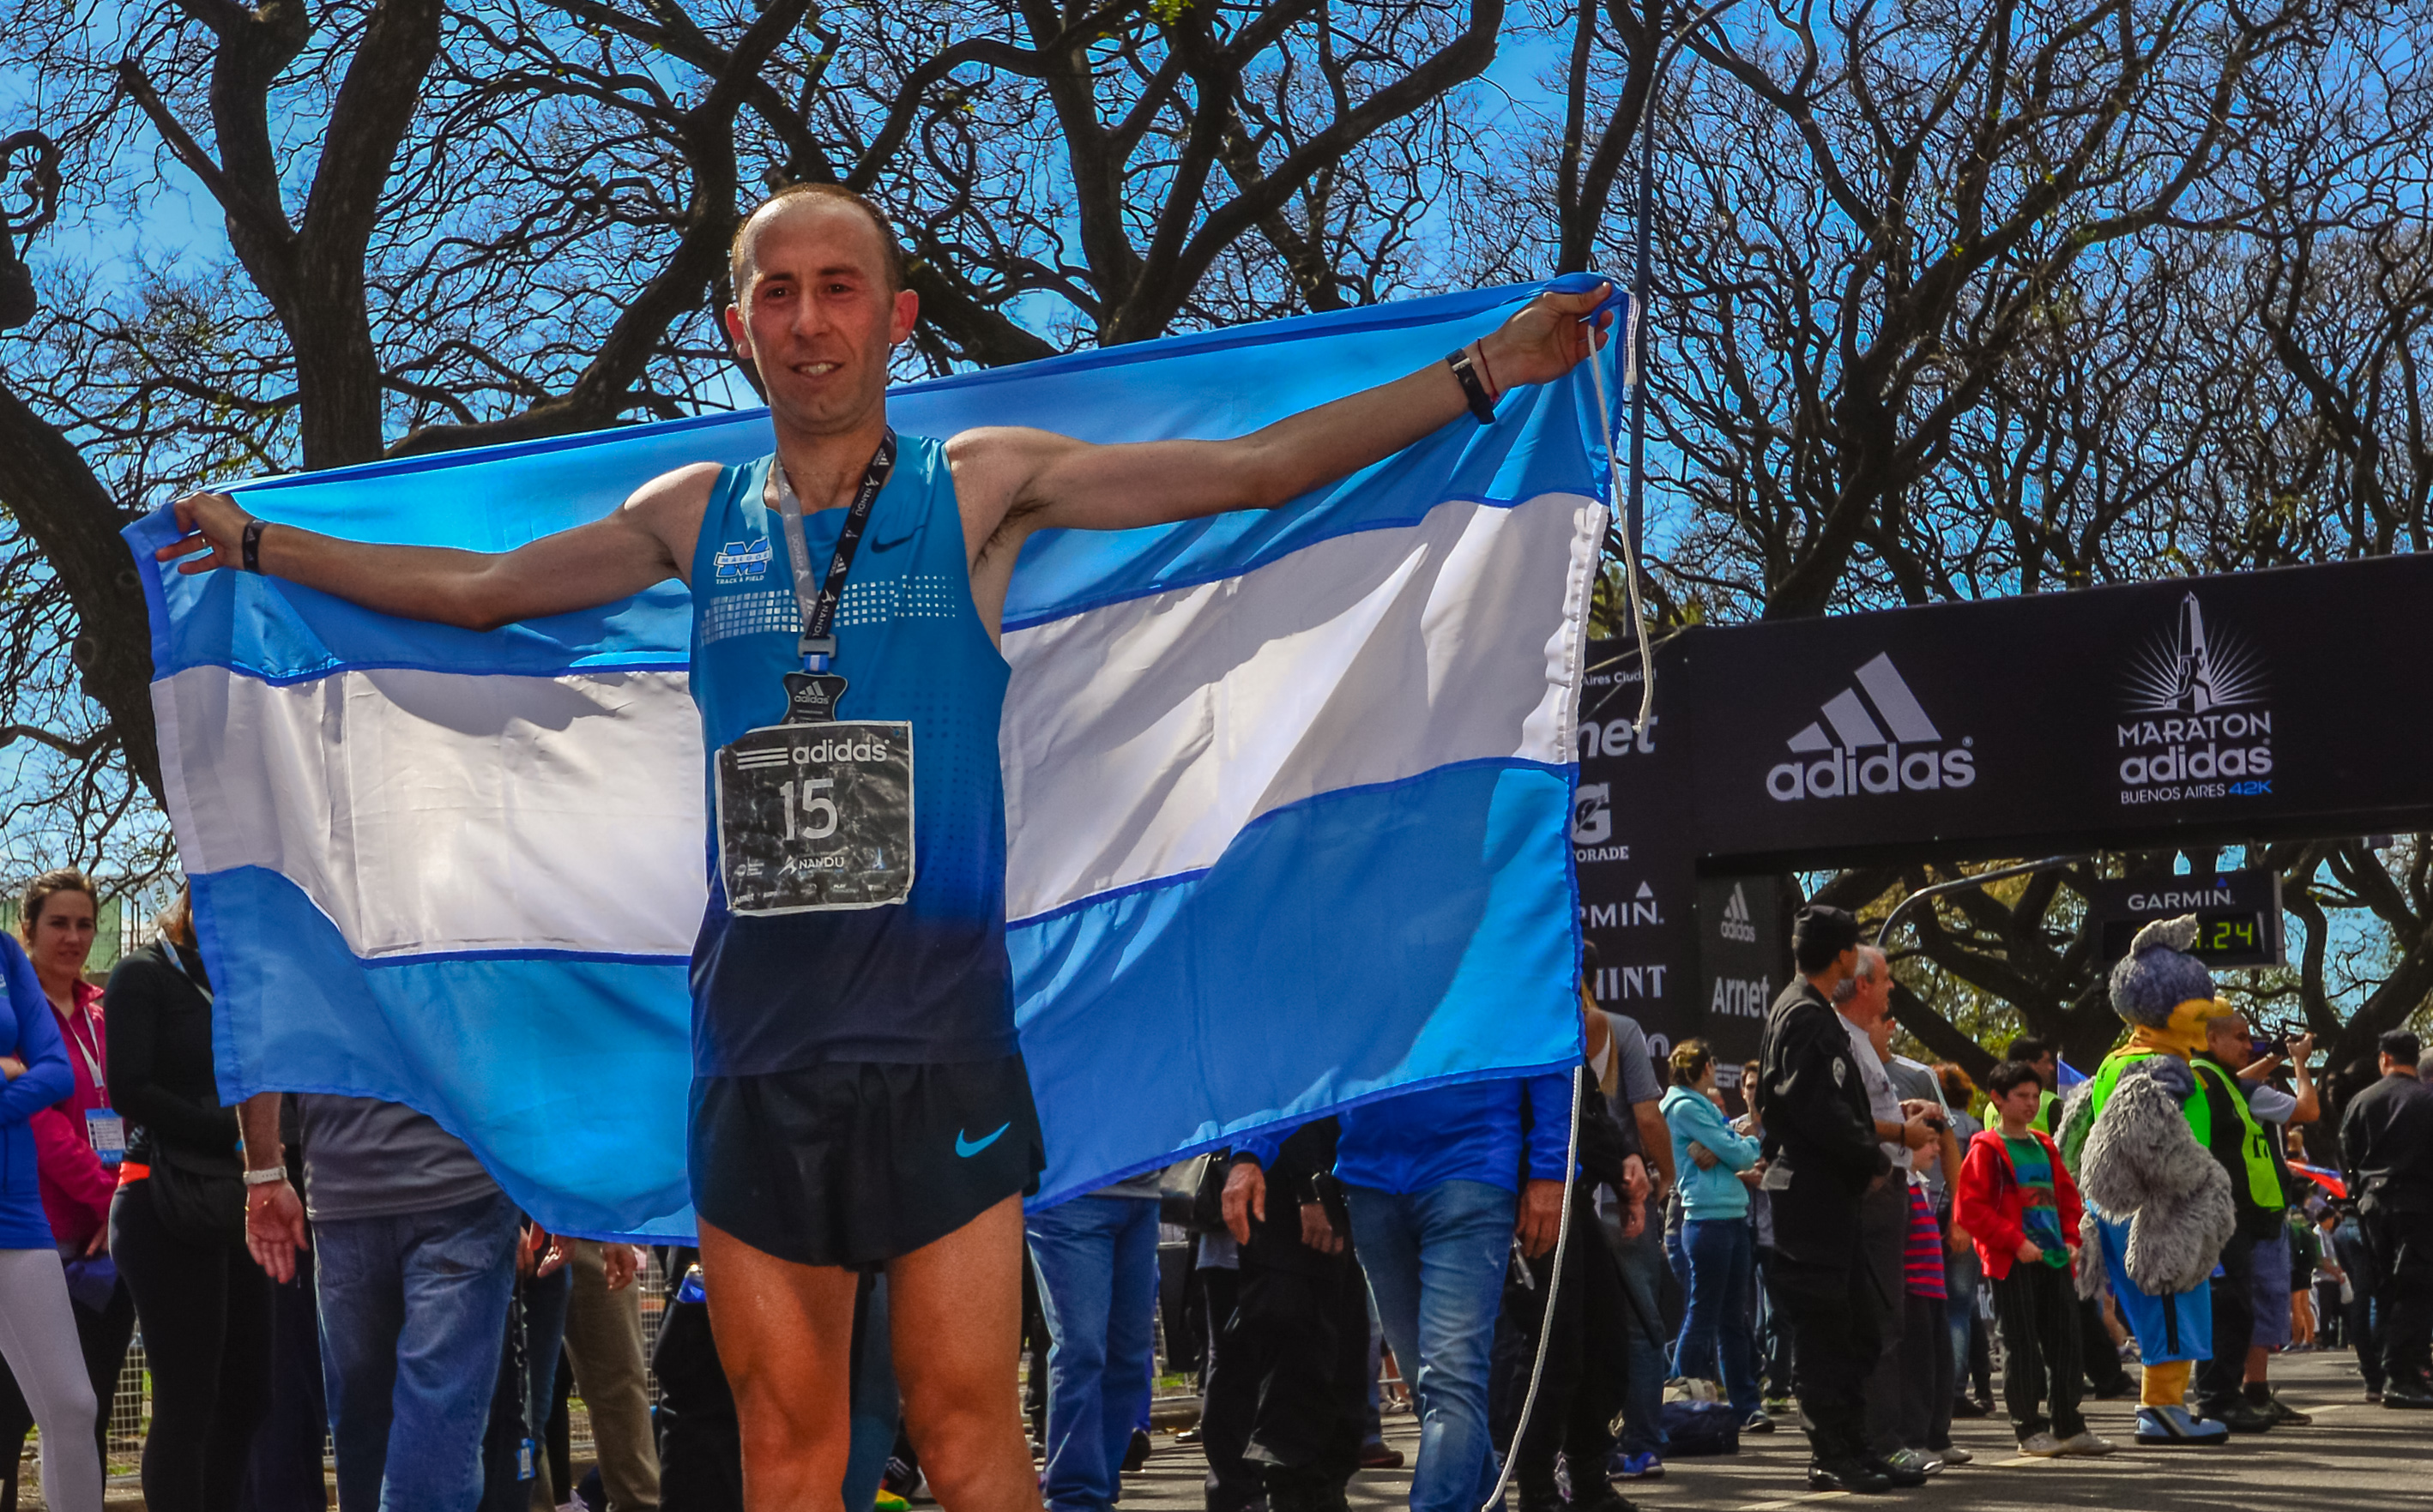 Resultados Maratón de Buenos Aires 2014